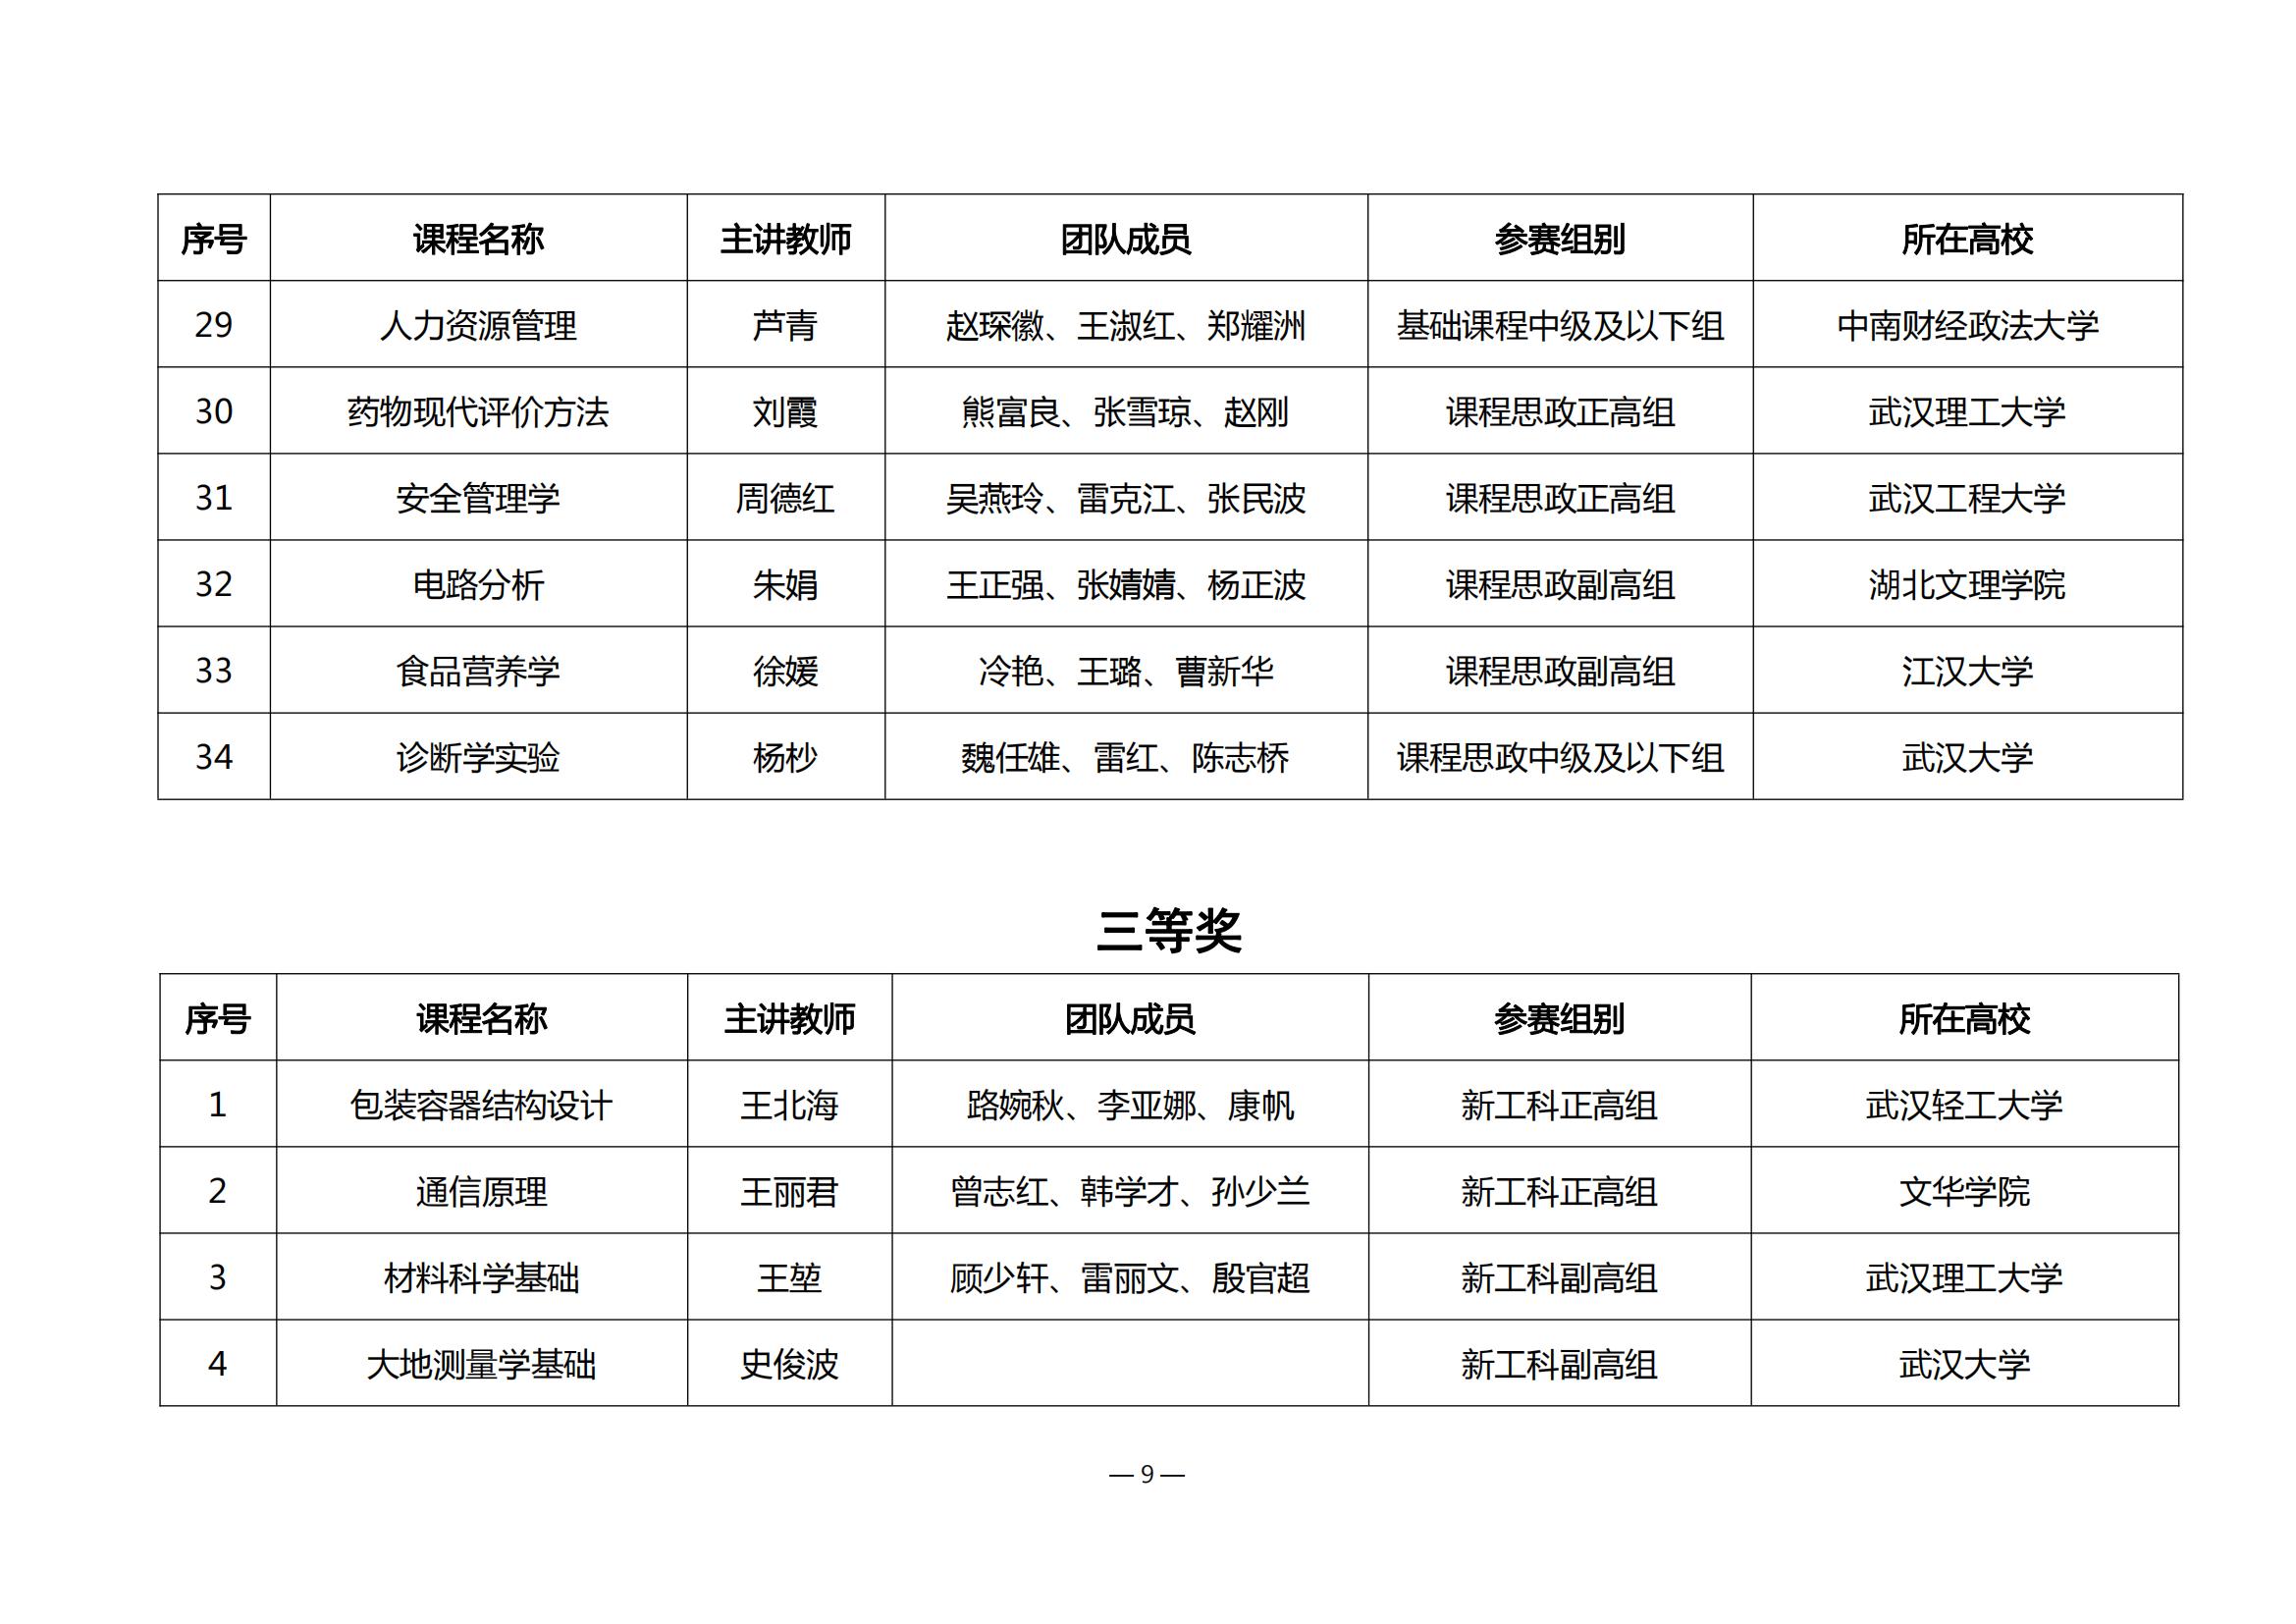 第四届湖北省高校教师教学创新大赛评审结果公示_08.jpg